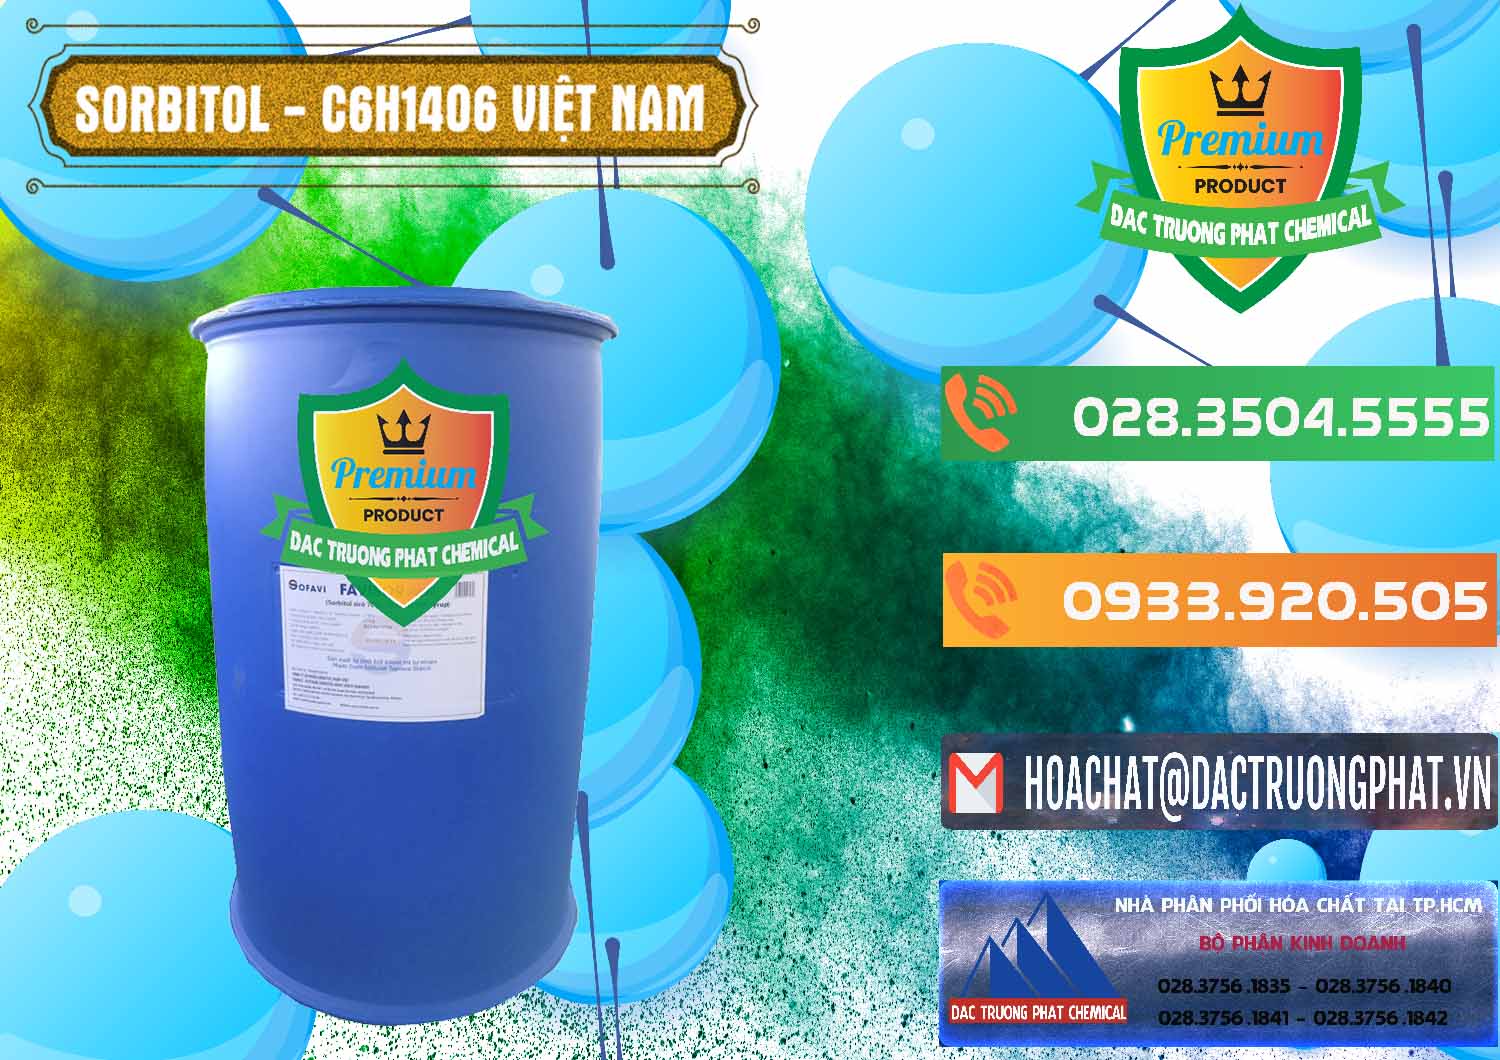 Nơi chuyên phân phối - bán Sorbitol - C6H14O6 Lỏng 70% Food Grade Việt Nam - 0438 - Công ty cung ứng & phân phối hóa chất tại TP.HCM - hoachatxulynuoc.com.vn